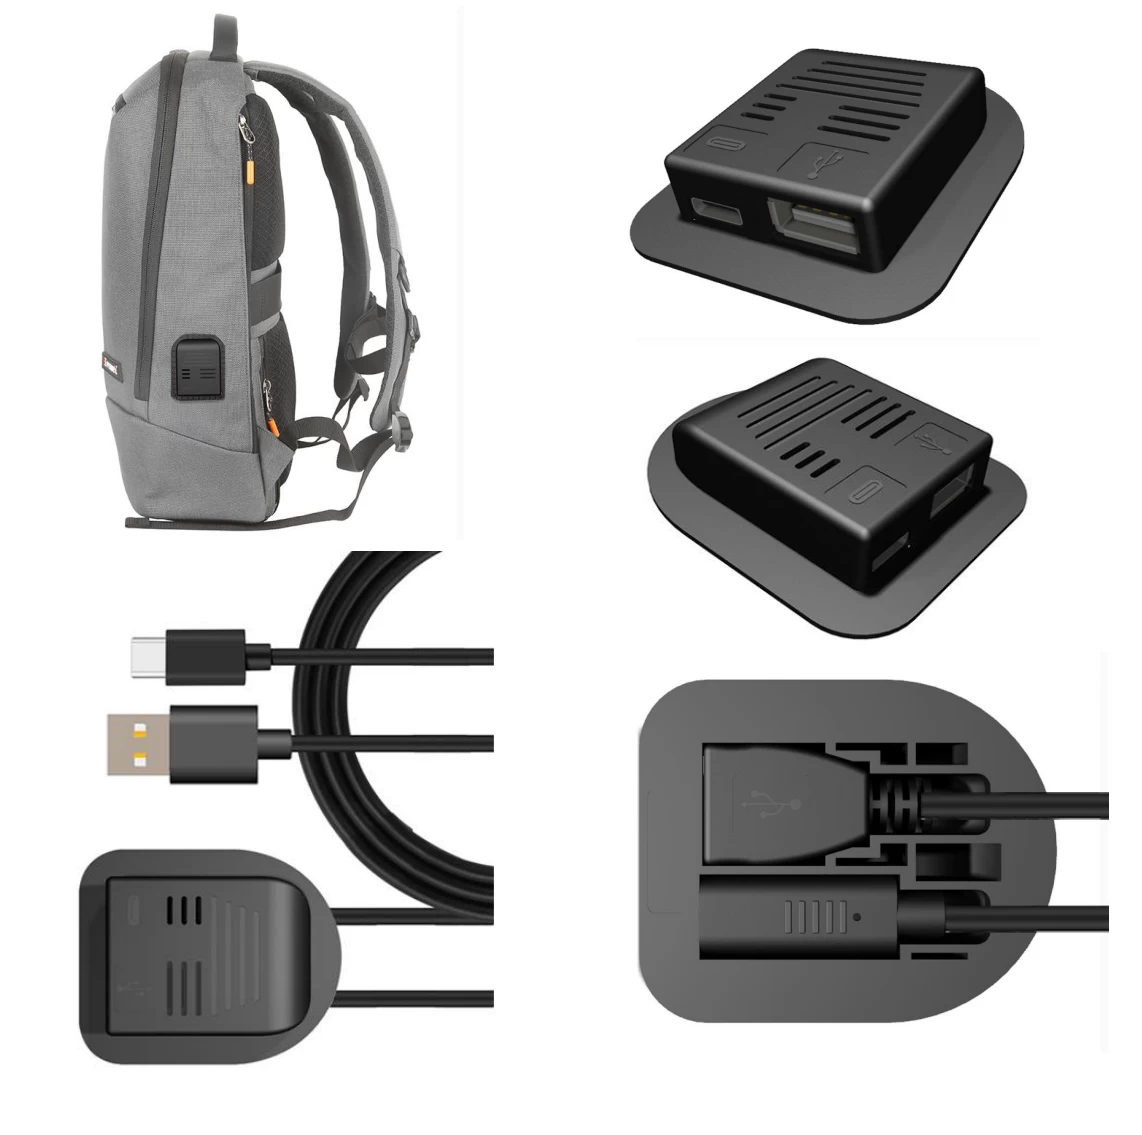 中国 防盗背包外接 USB 外壳数据线 2 合 1 USB C 型快速充电延长线适用于单肩包和手提箱配件 制造商